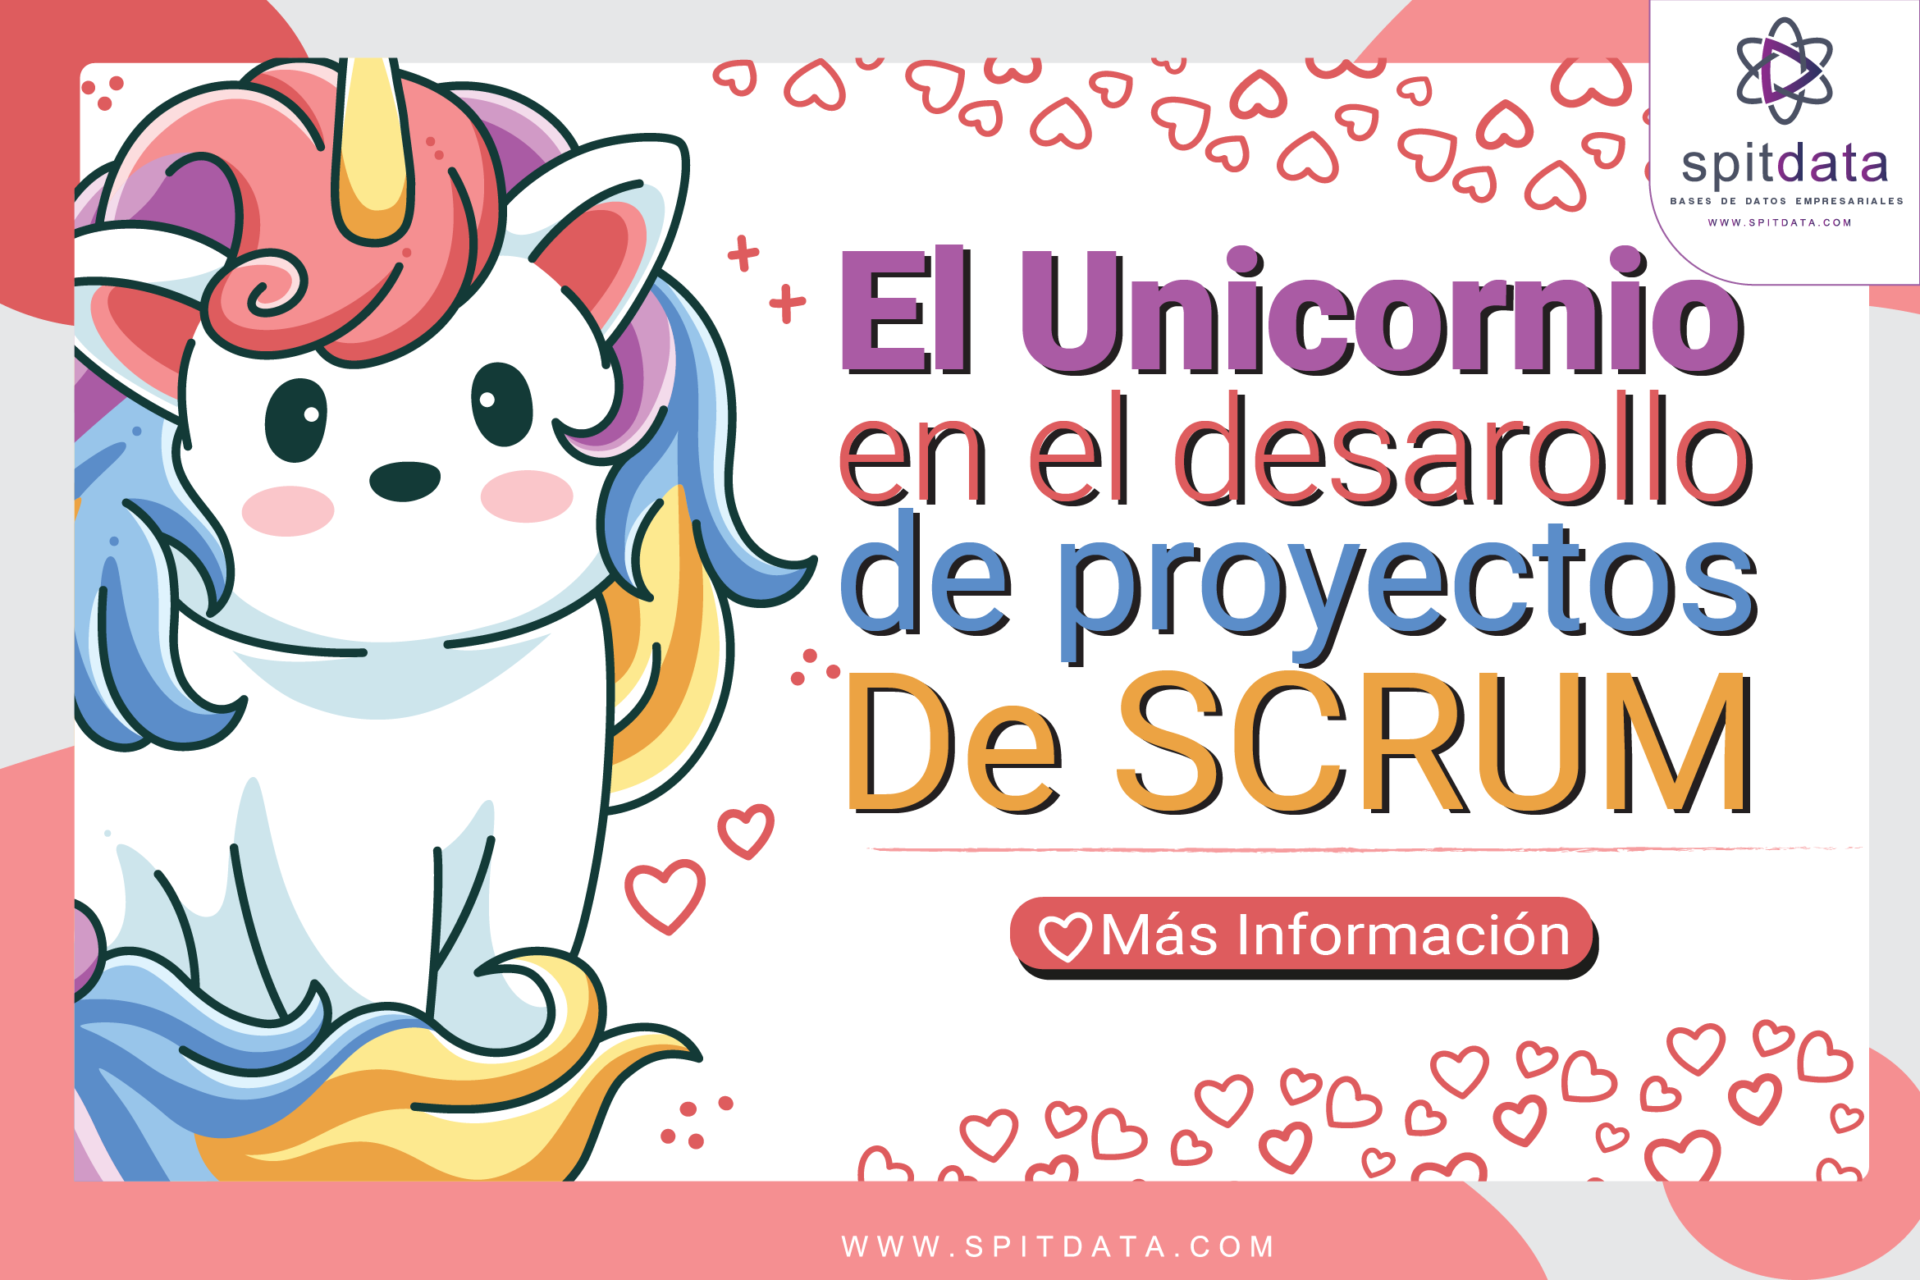 El Unicornio de la agilidad (Scrum) / SpitData Bases de datos empresariales